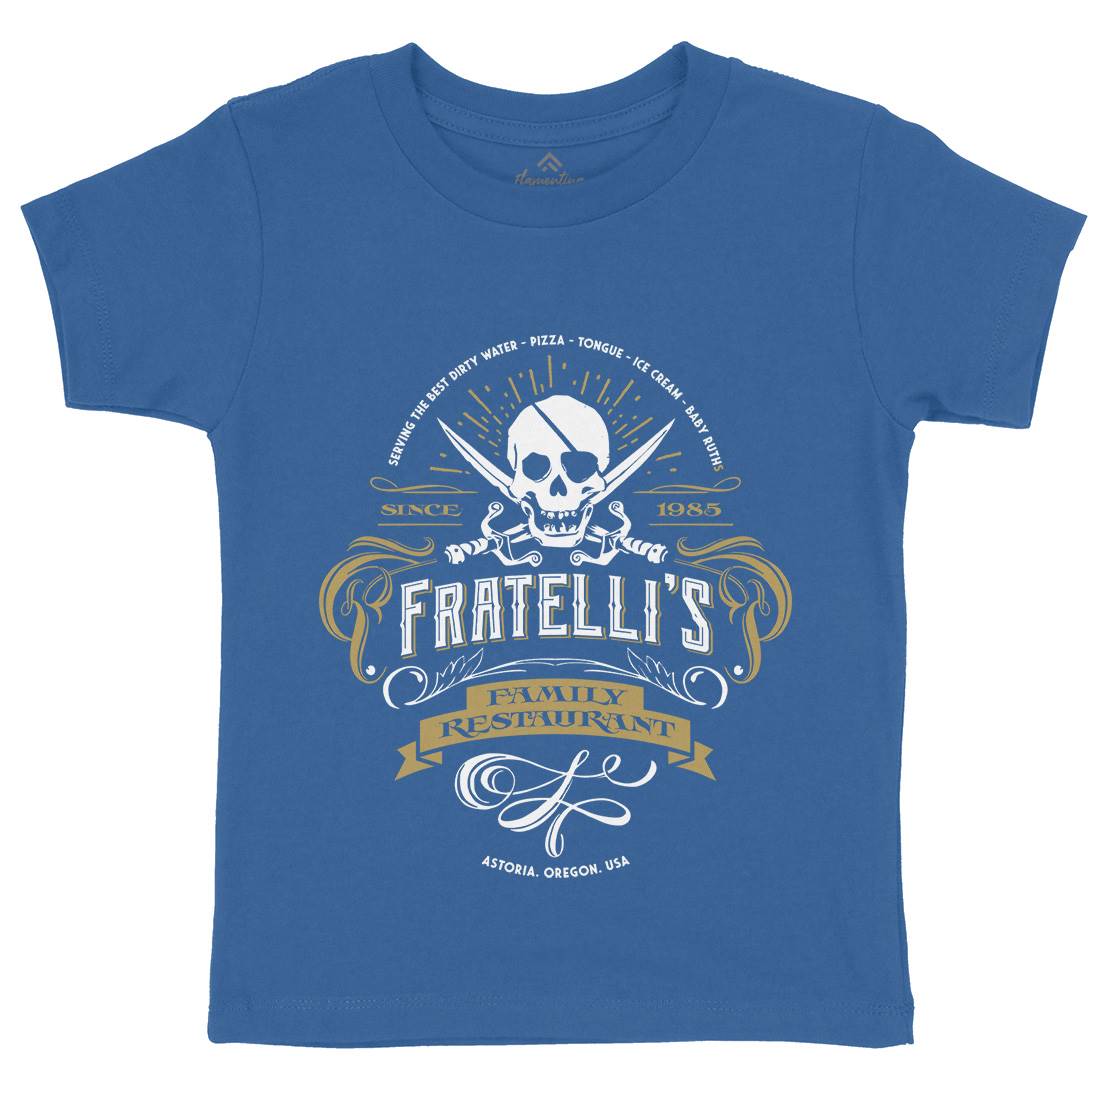 Fratellis Restaurant Kids Organic Crew Neck T-Shirt Horror D157